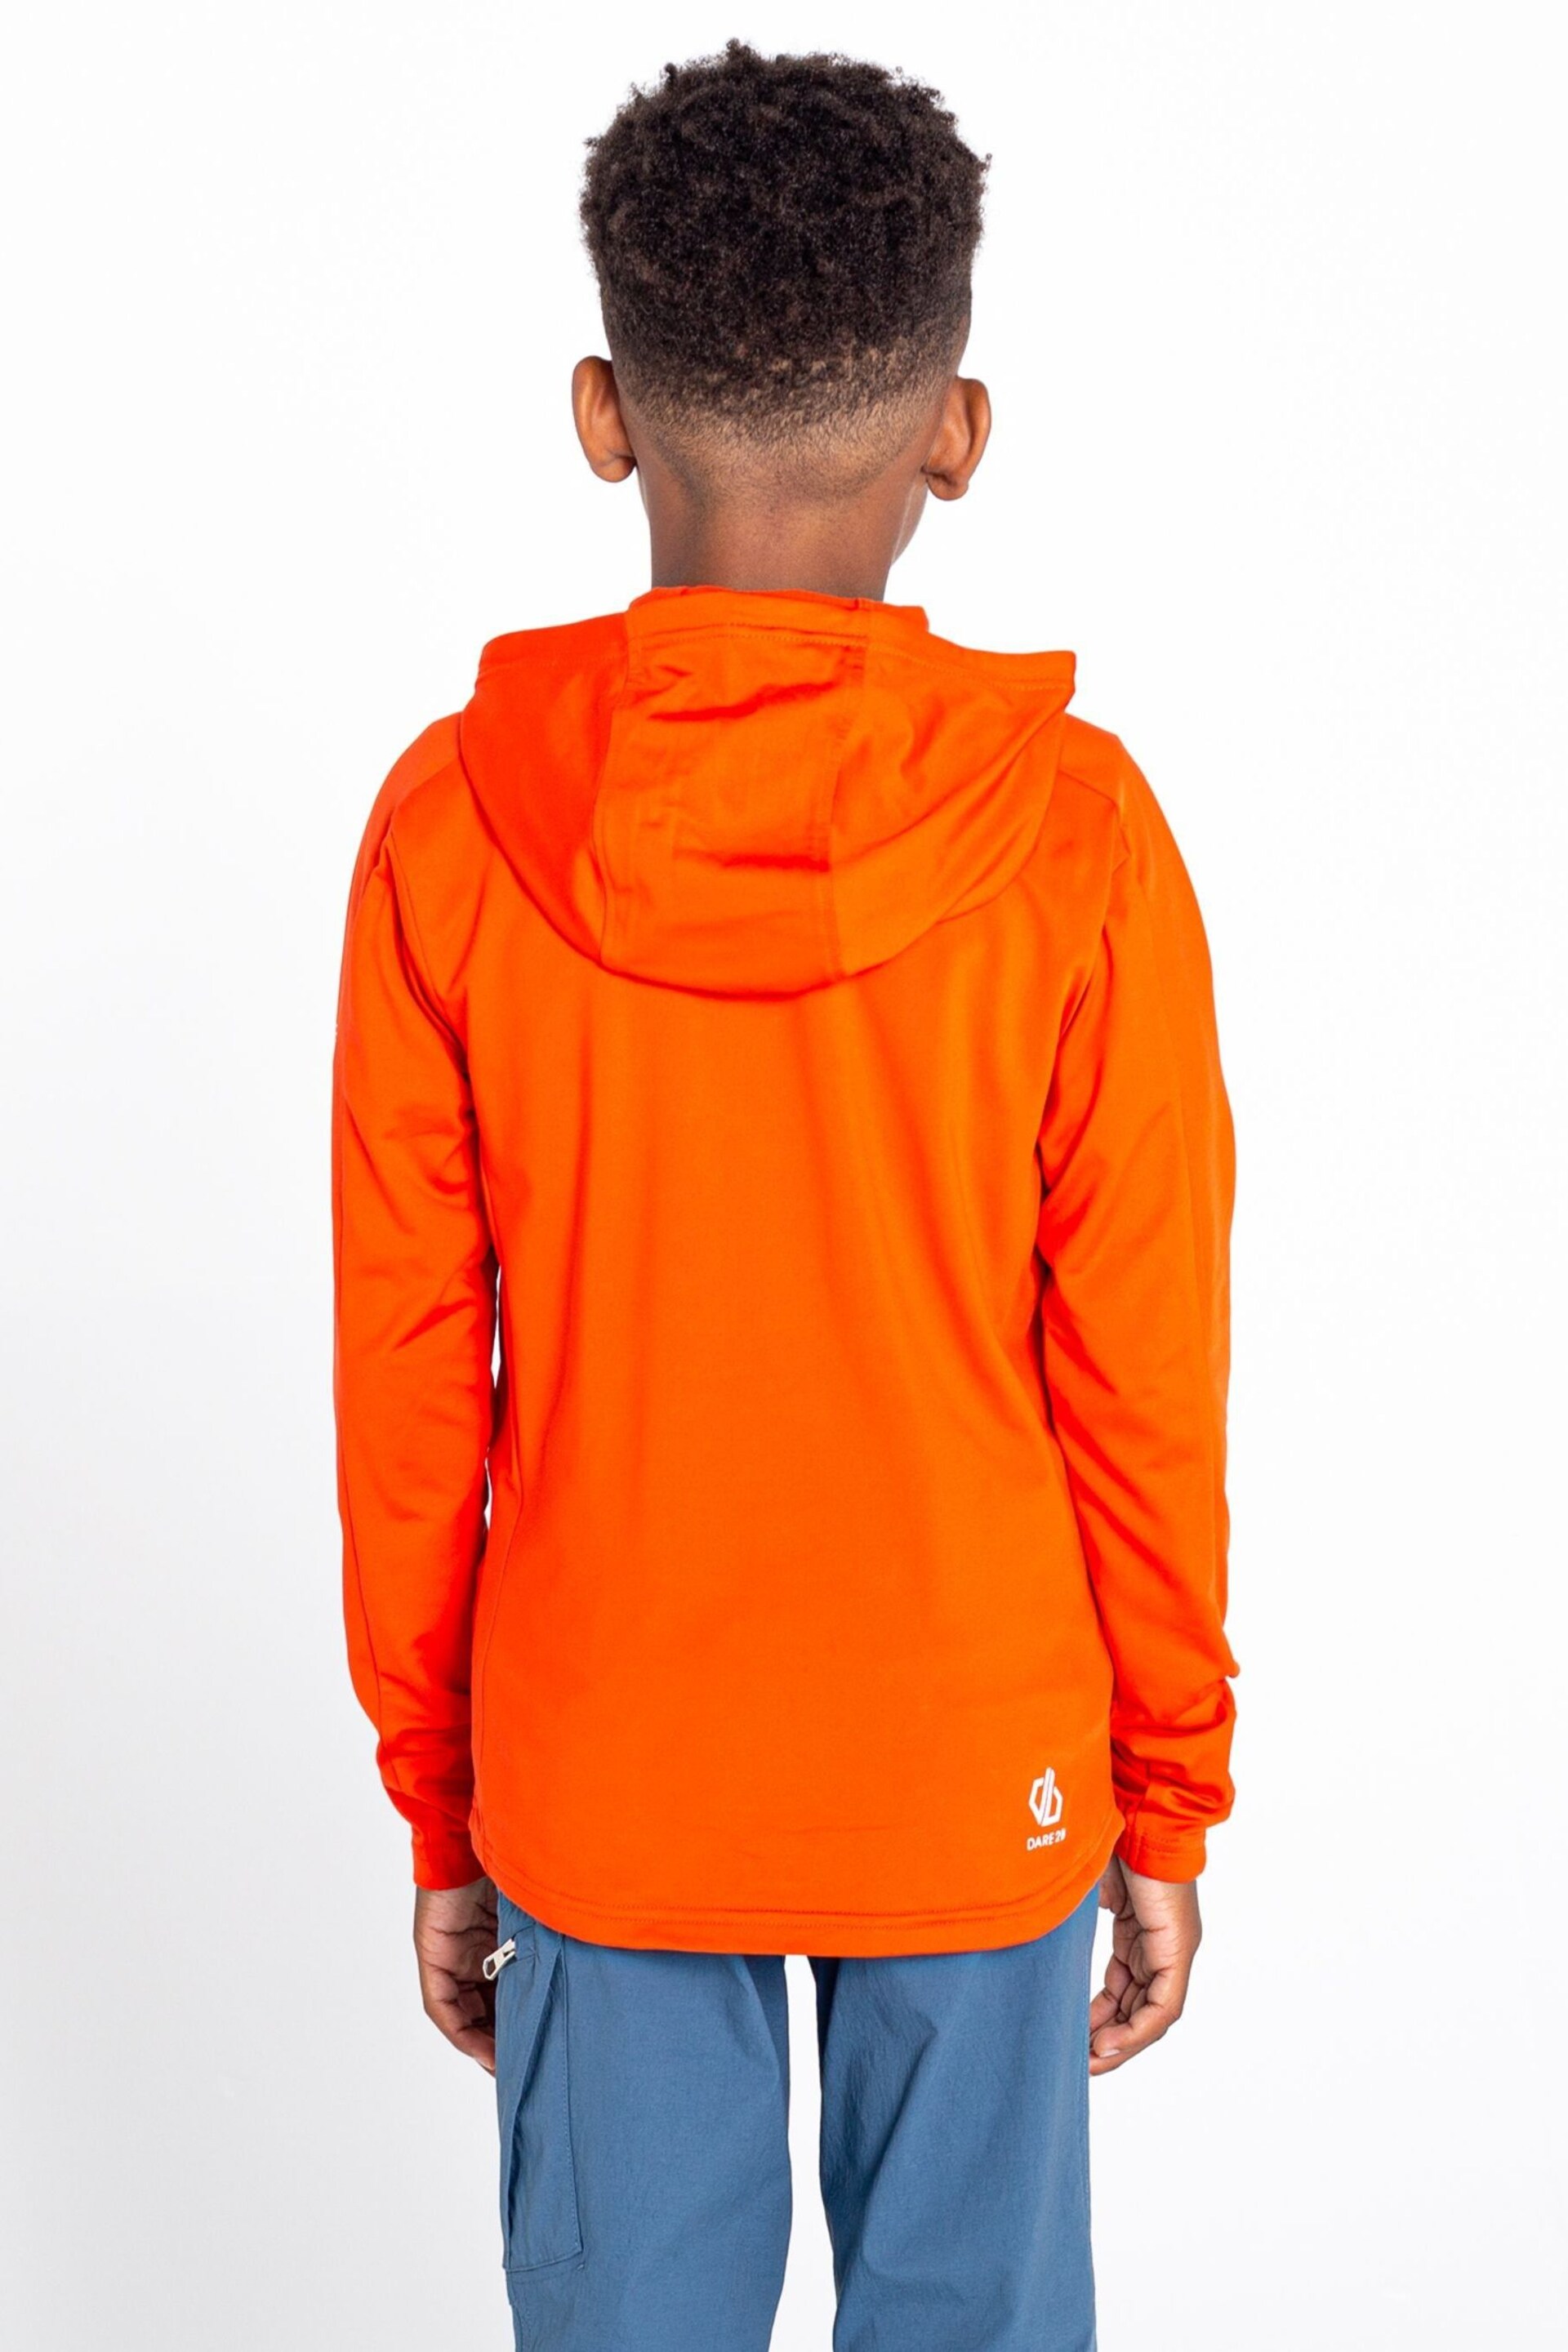 Dare 2b Orange Hastily Core Stretch Midlayer Fleeces - Image 3 of 4